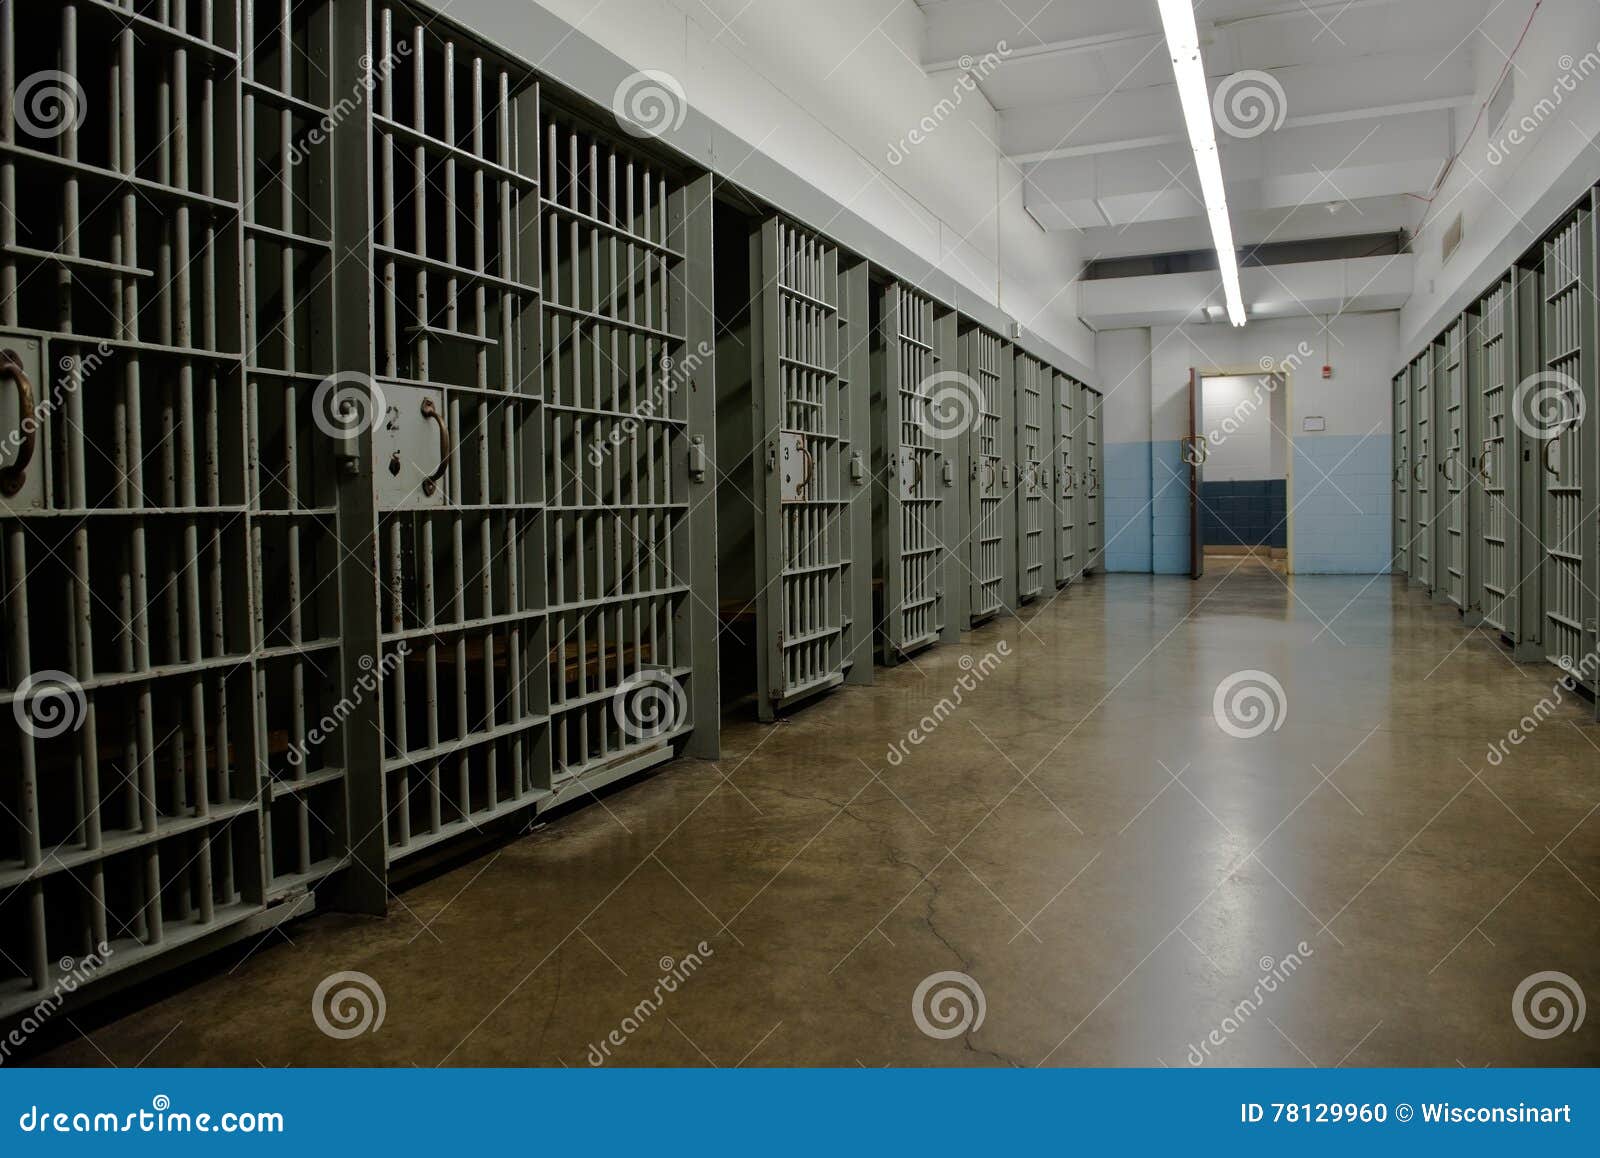 jail cell, prison, law enforcement